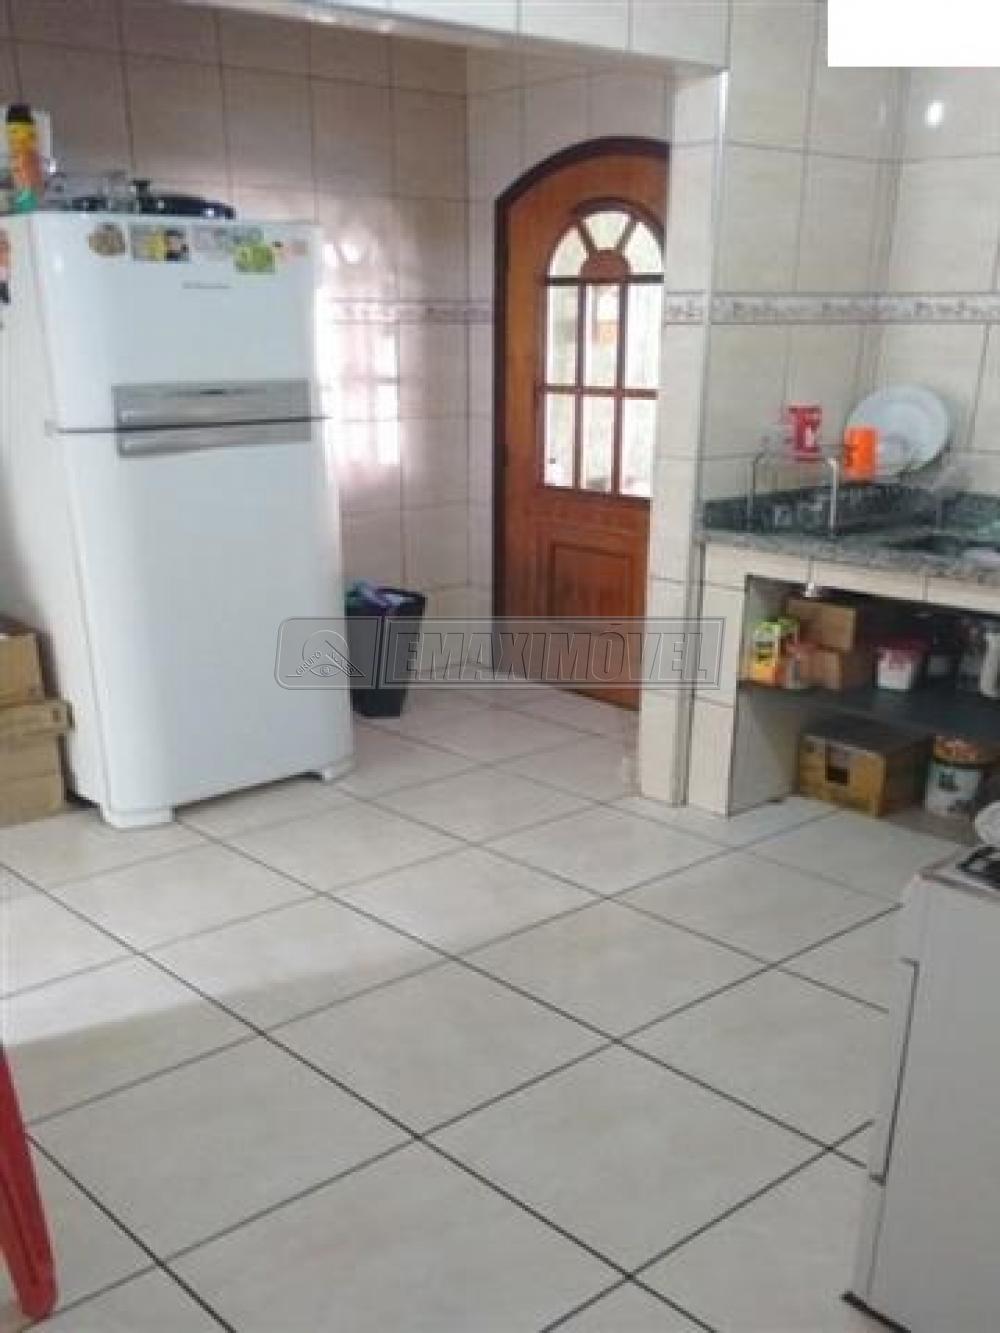 Comprar Casa / em Condomínios em Sorocaba R$ 350.000,00 - Foto 9